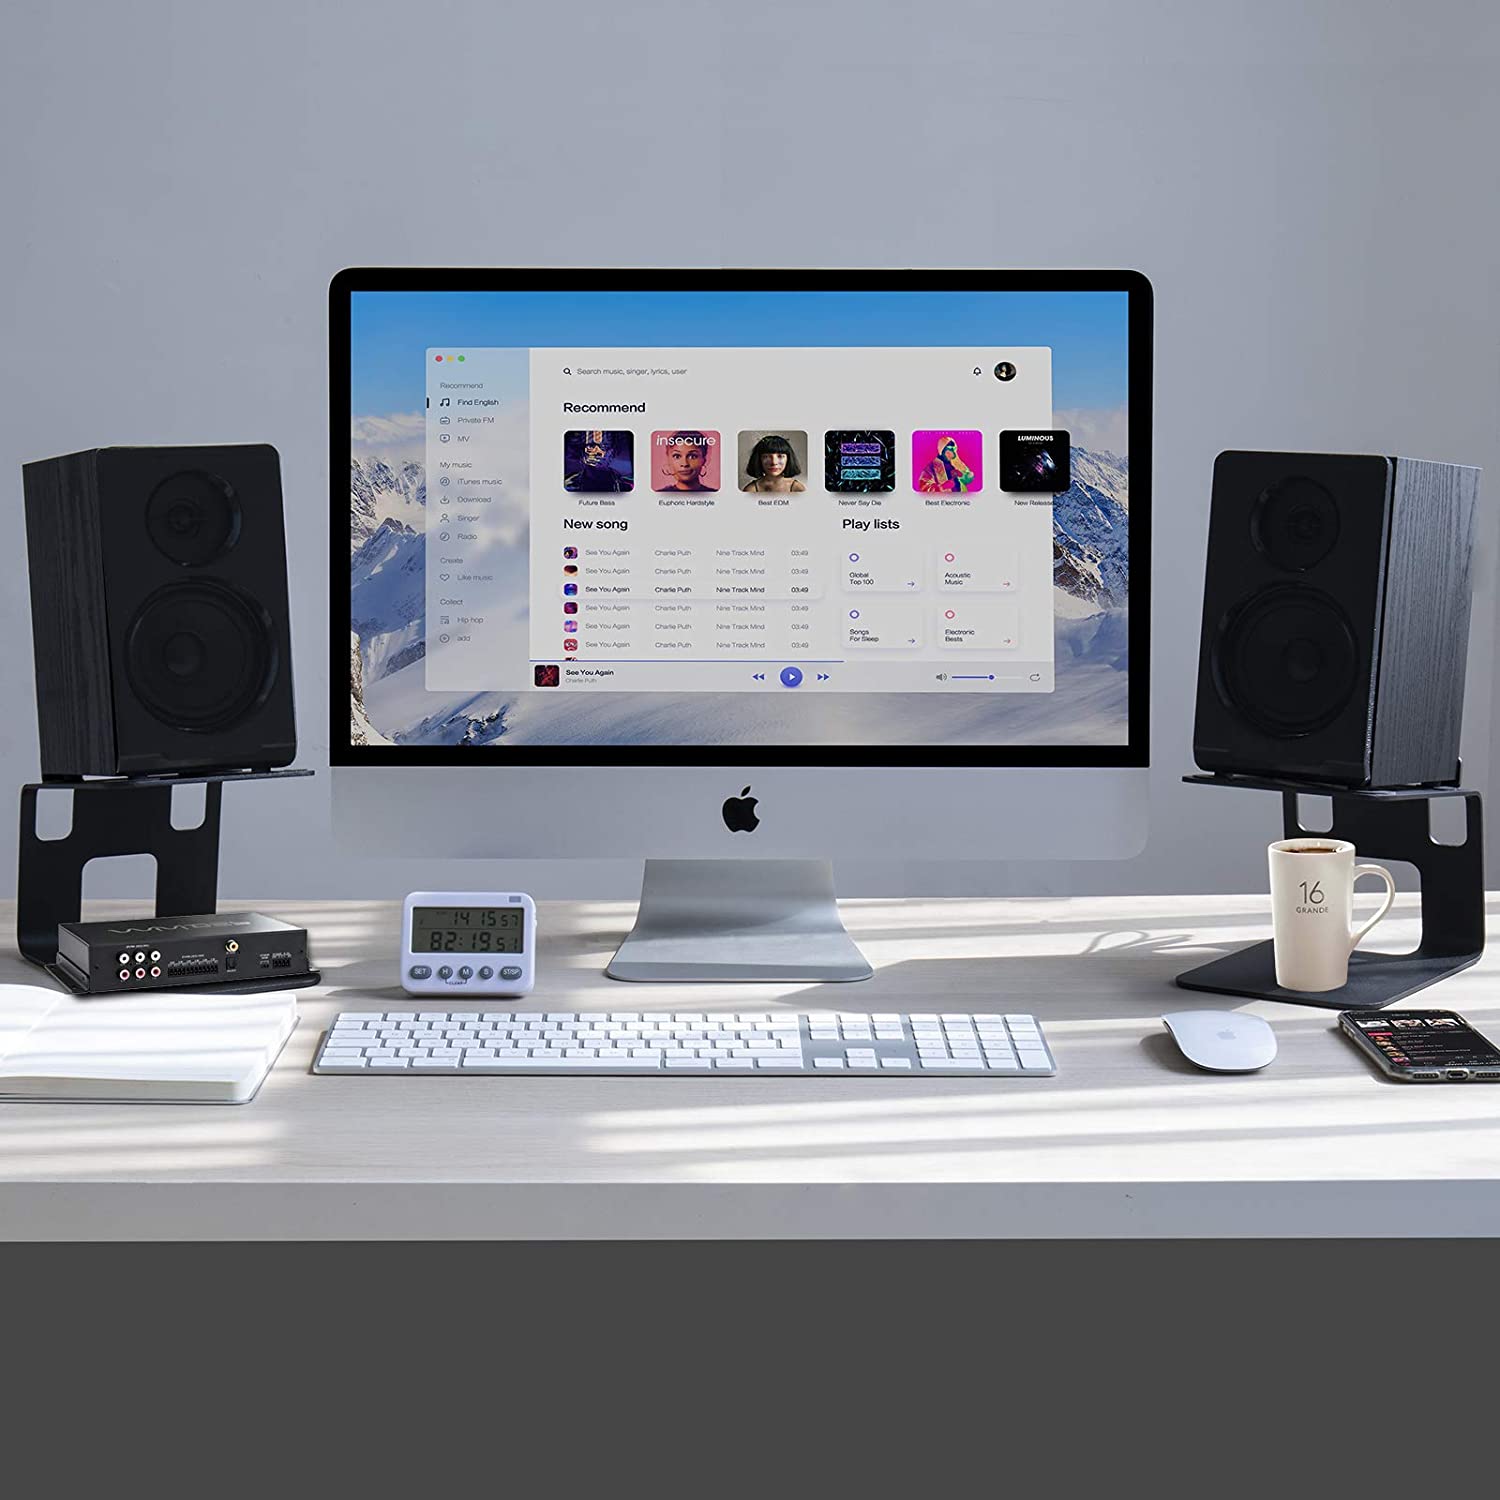 Vaydeer Metal Desktop Speaker Stand (1 Pair)